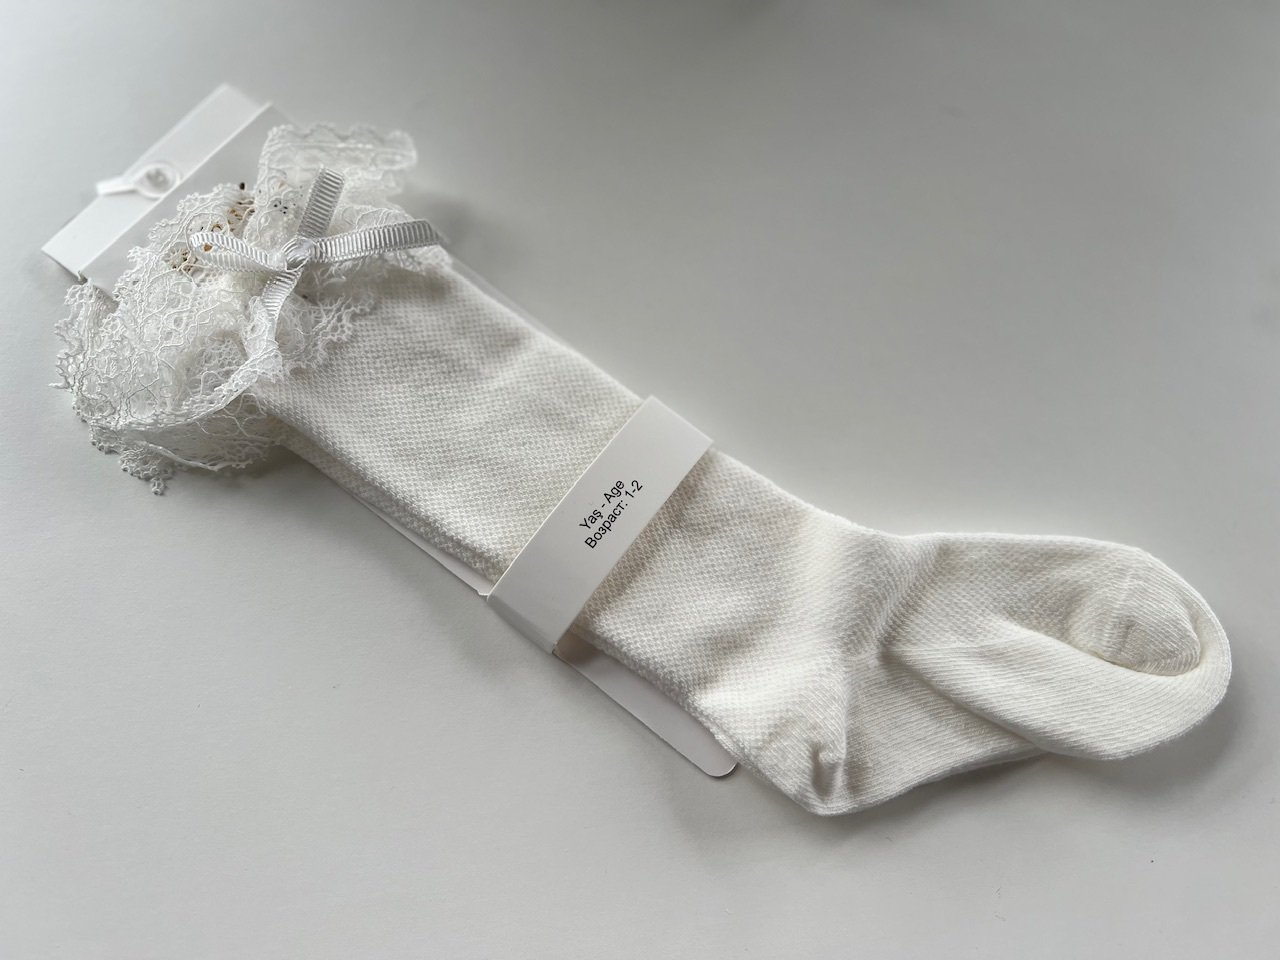 Ilgos pieno baltos kojinės su nėroniu